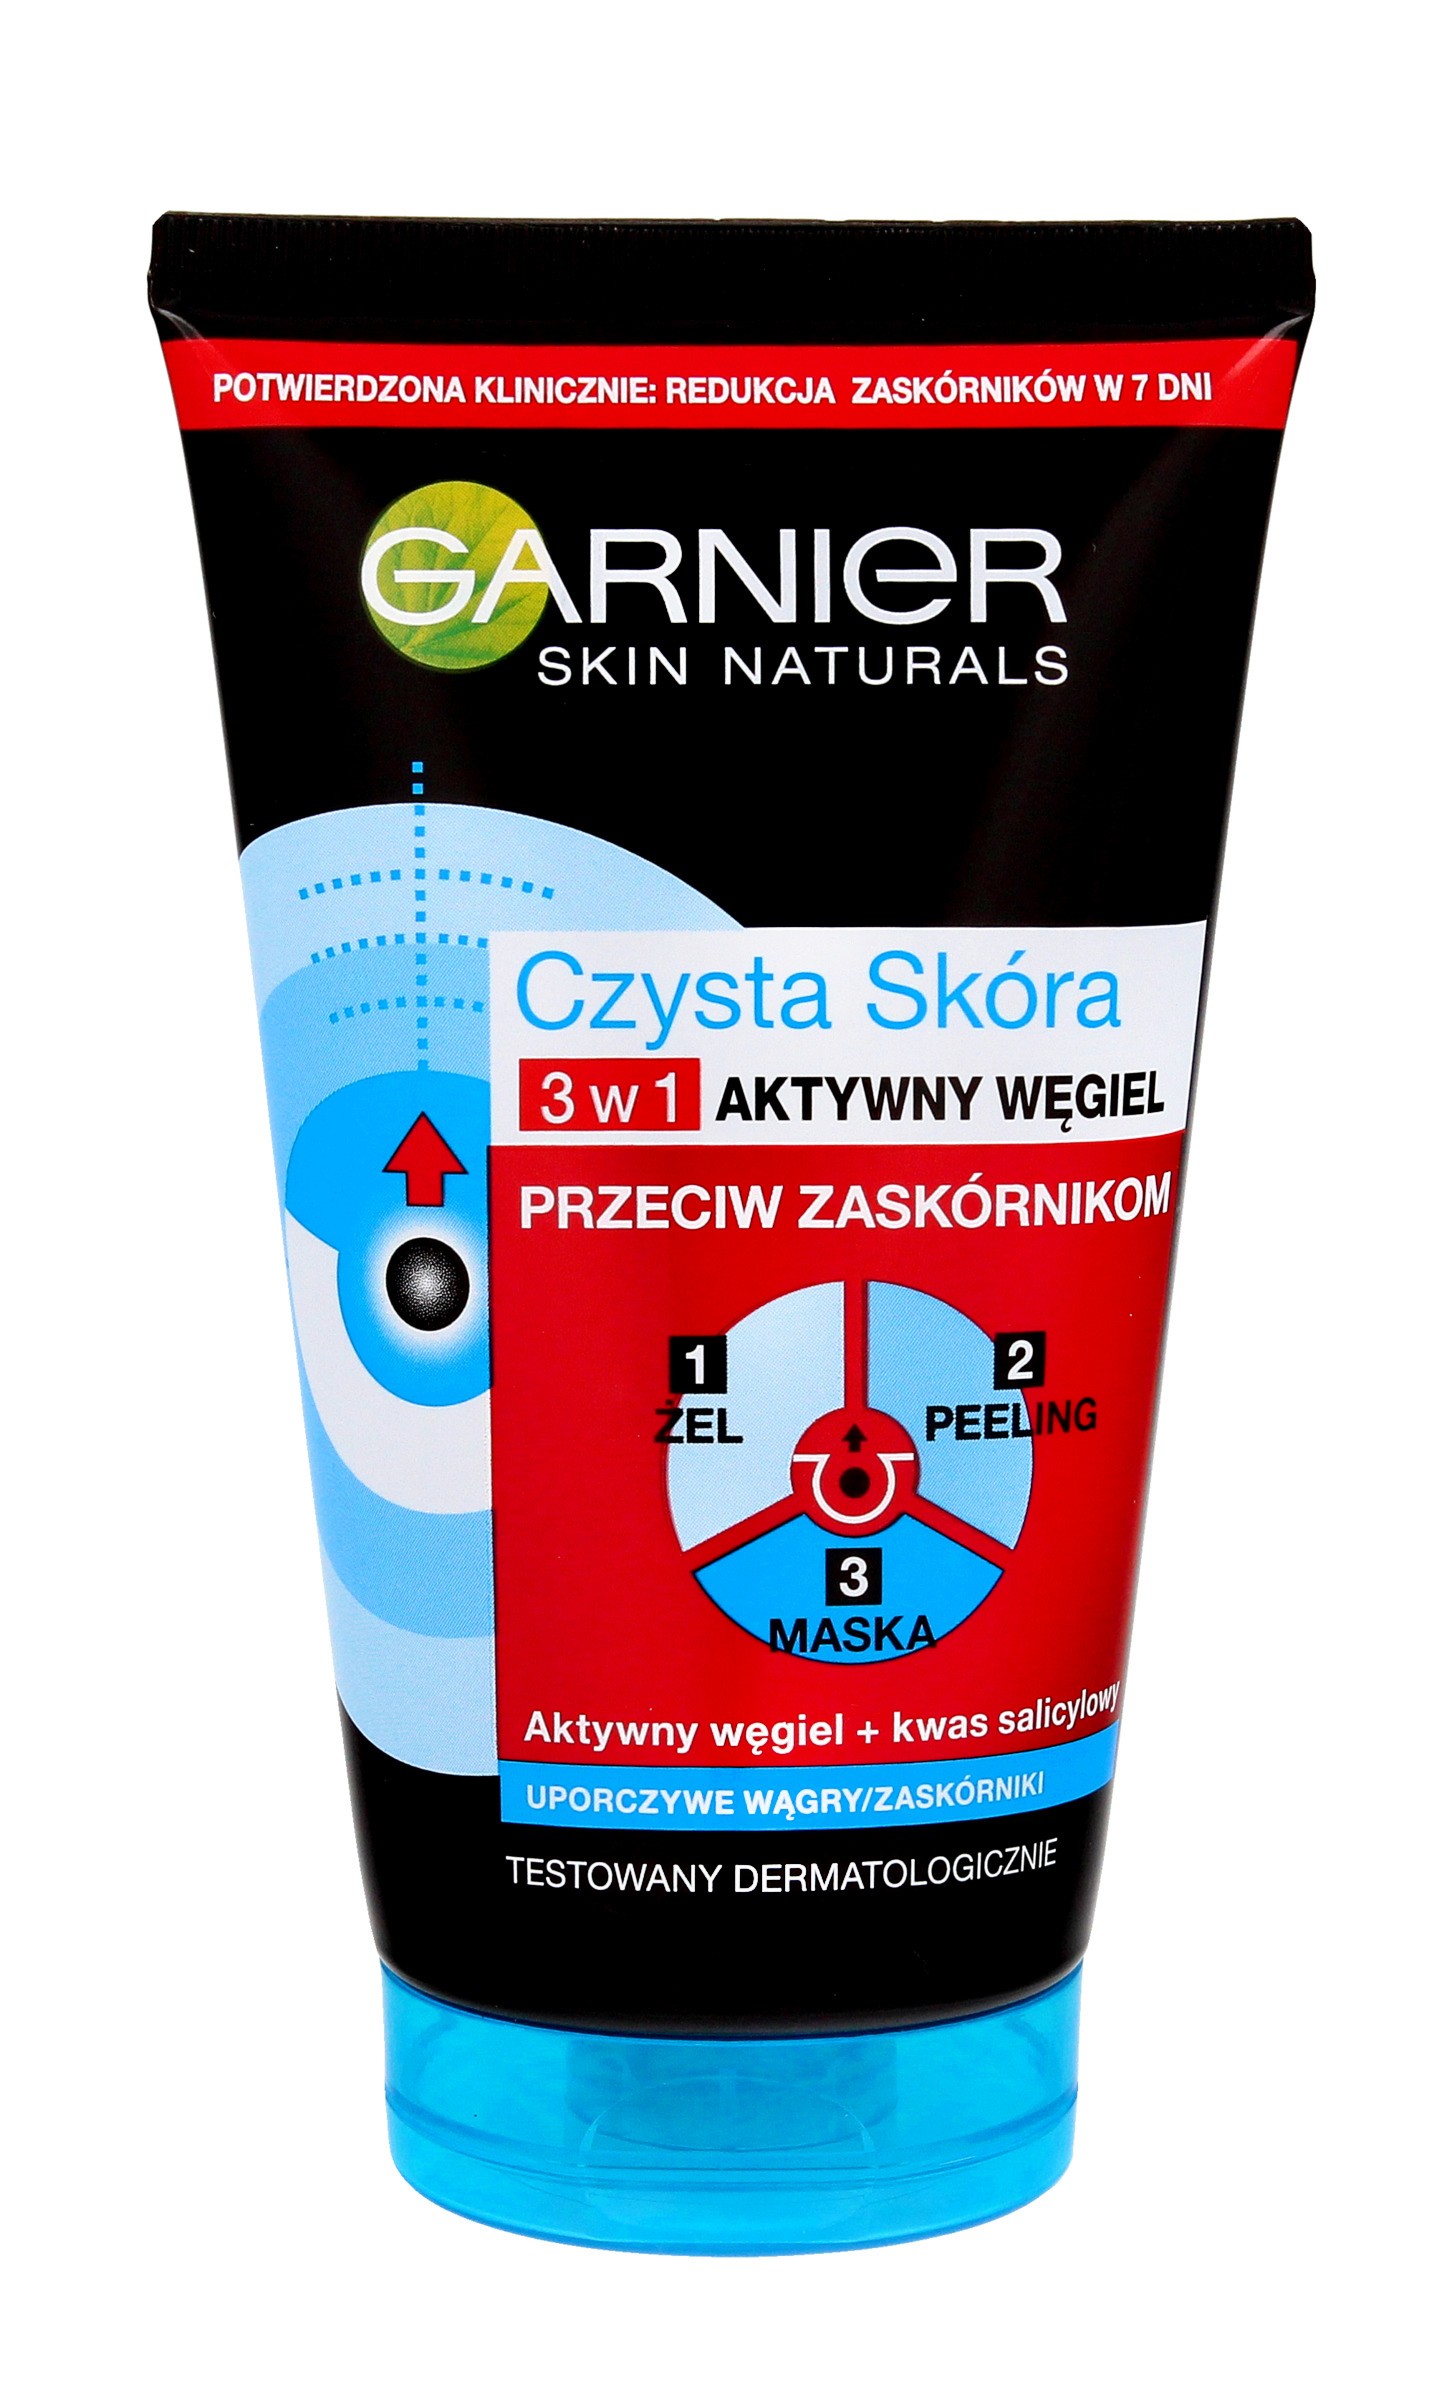 Garnier Skin Naturals Czysta Skóra Aktywny Węgiel Żel 3w1  150ml